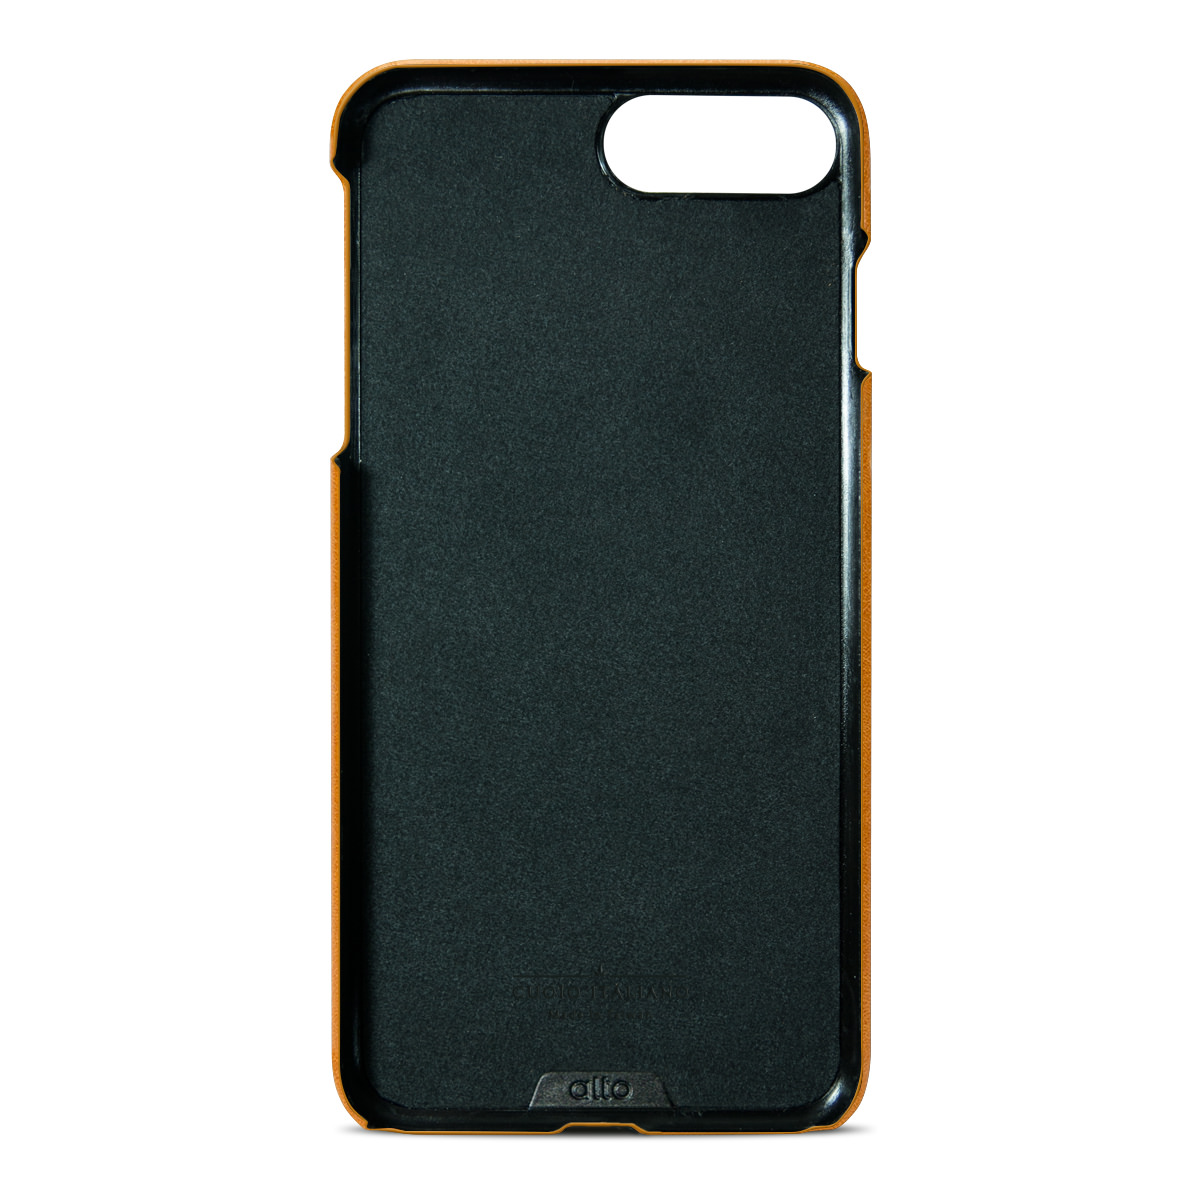 alto iPhone 7plus 真皮手機殼背蓋 Original Caramel